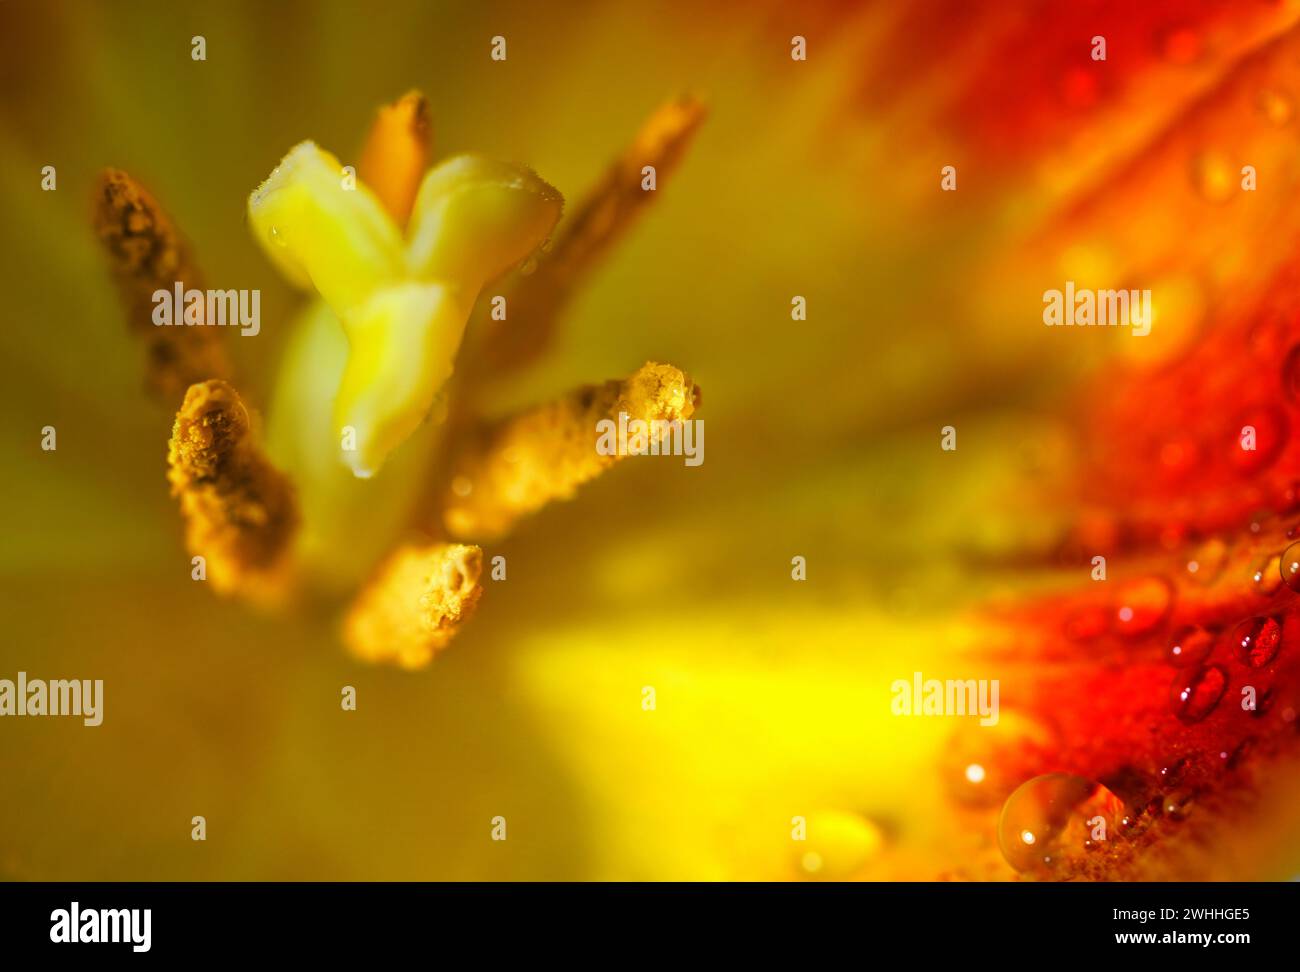 Dentro de una flor de tulipán amarillo rojo con pistilo, estambre y gotas de agua en el pétalo, toma de flor macro abstracta, espacio de copia, s Foto de stock